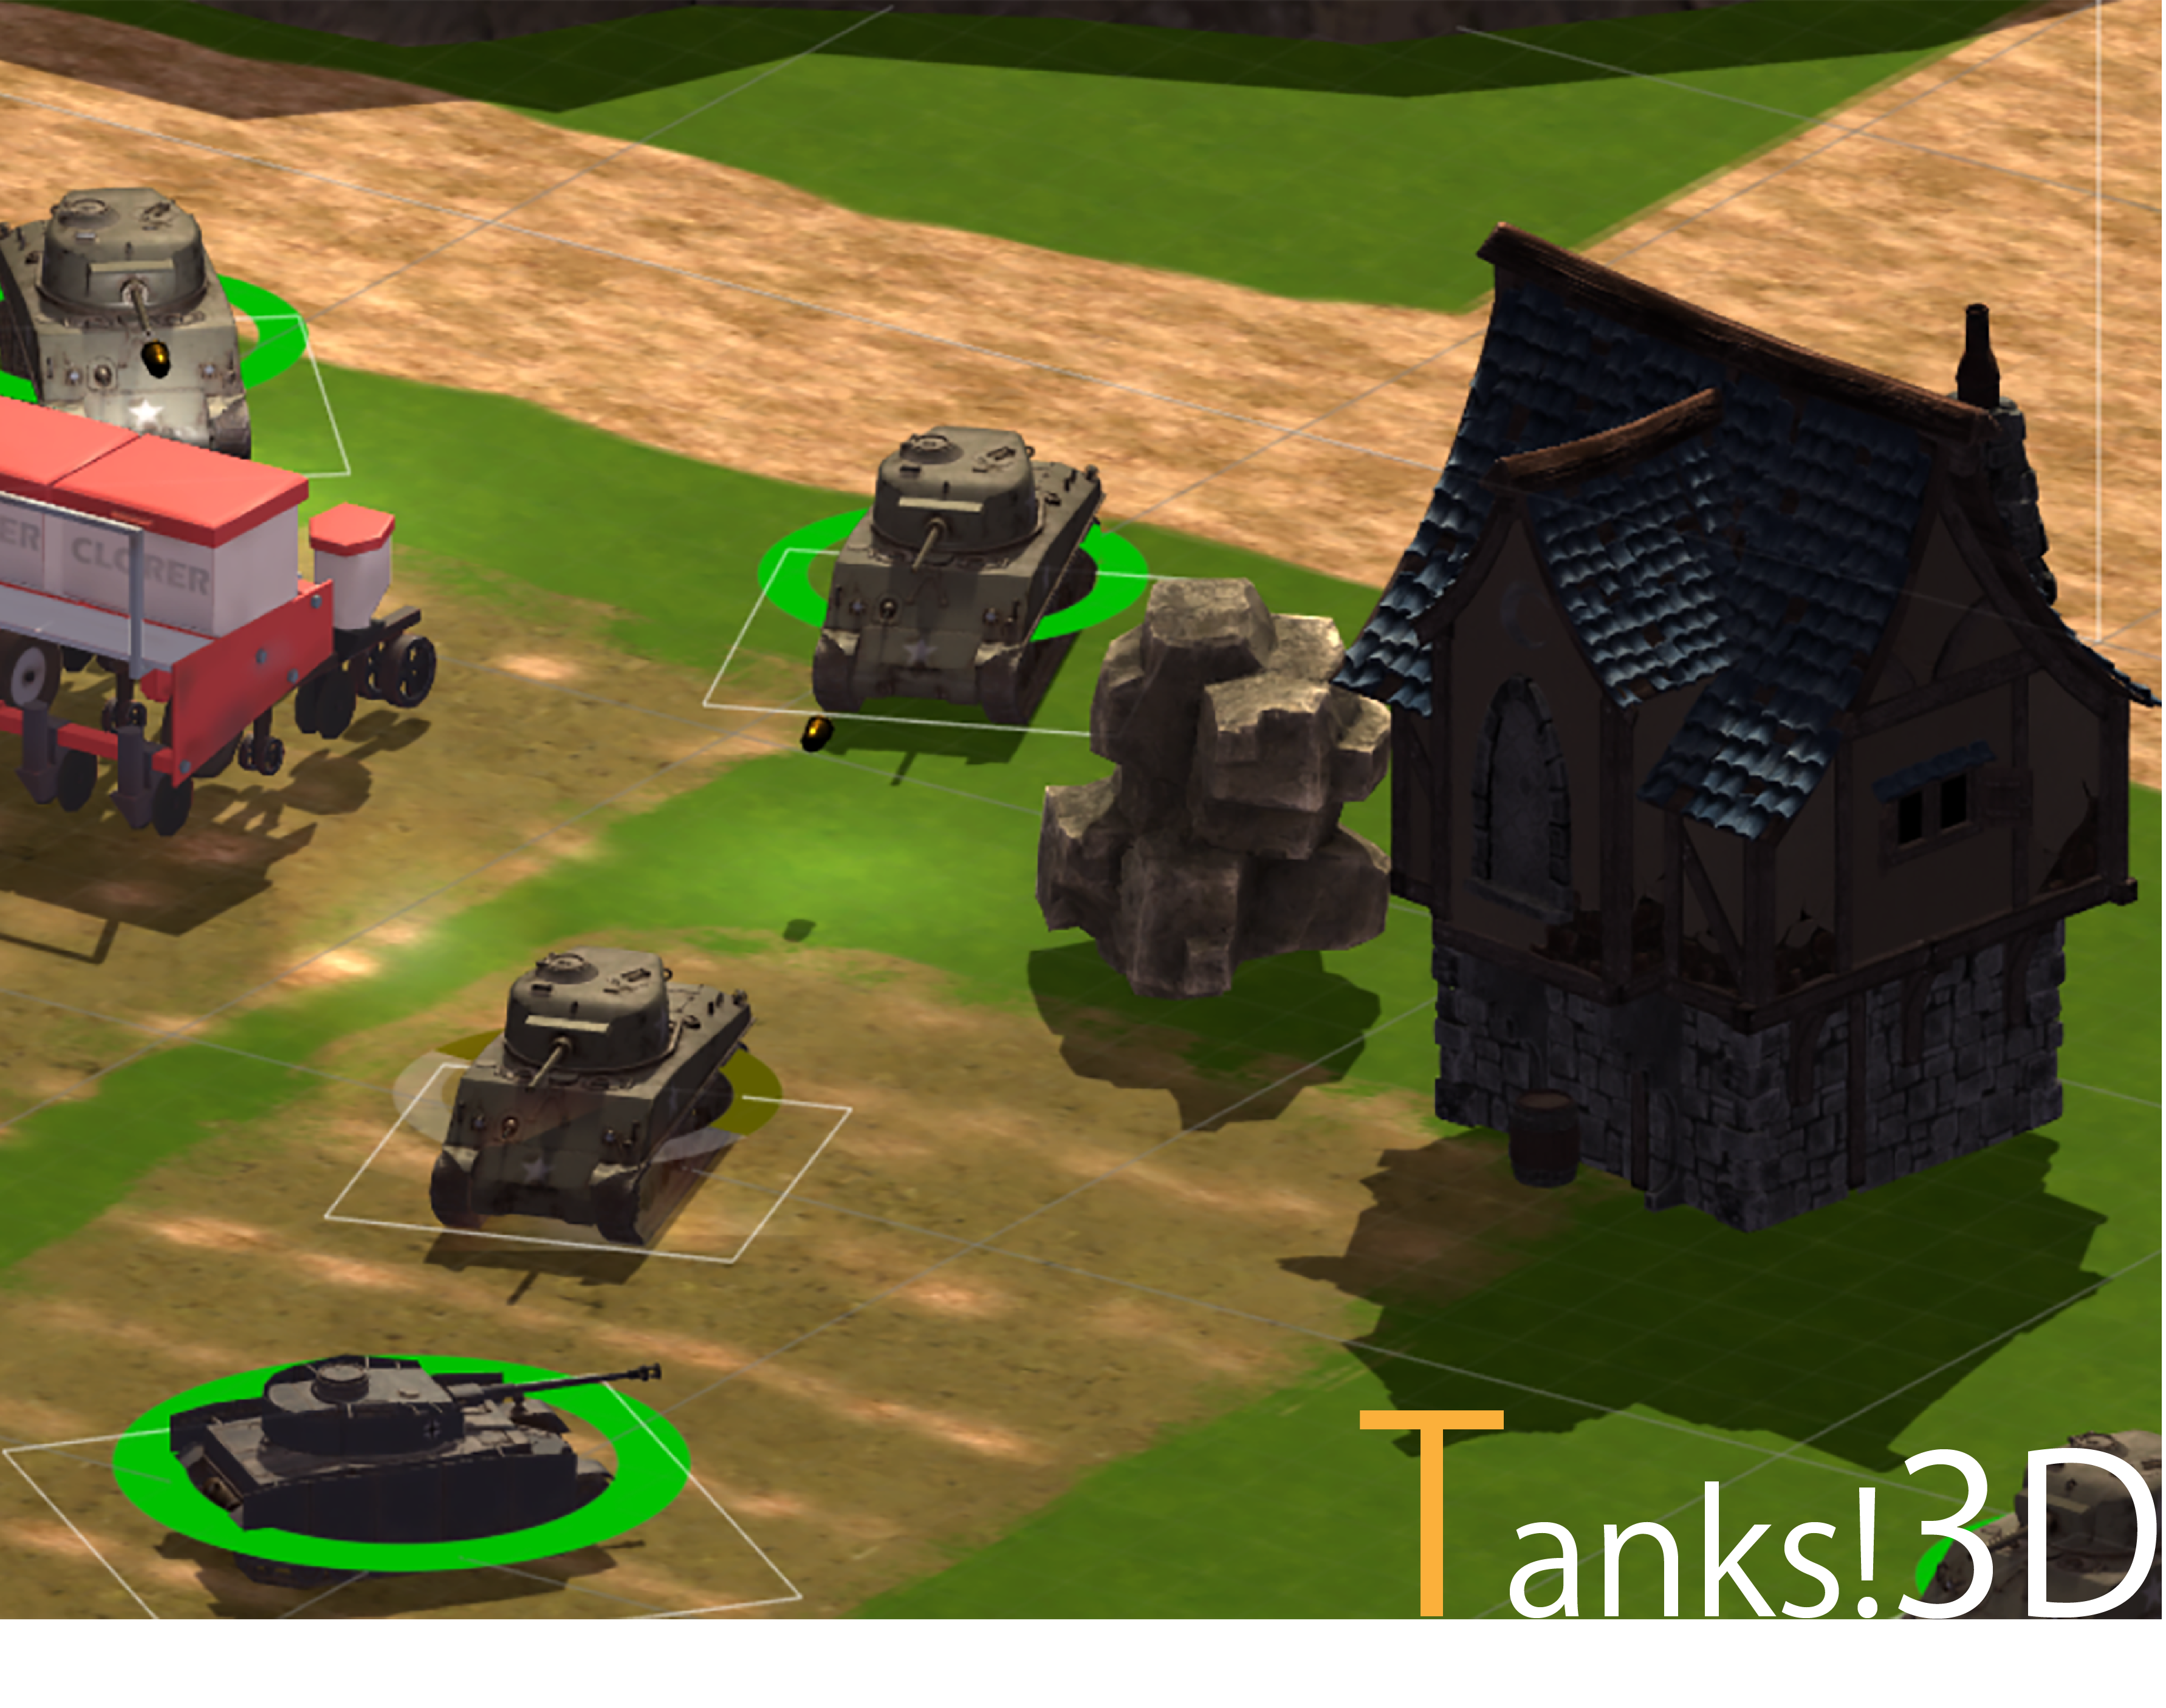 Tanks!3D